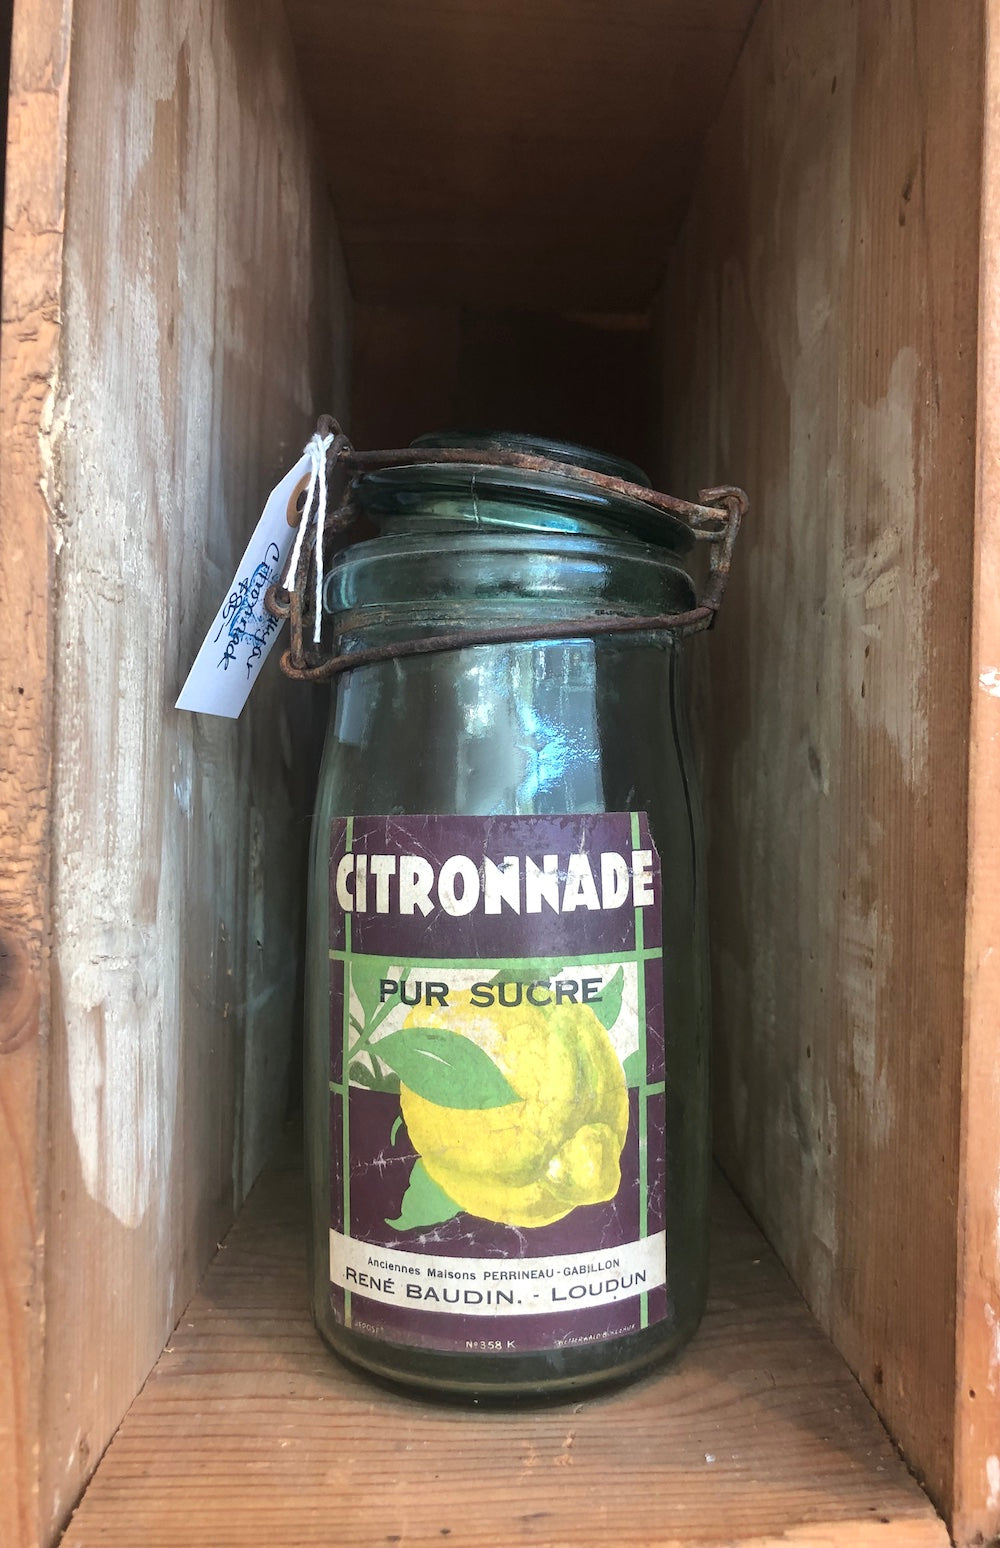 Vintage Canning Jars - Citronnade